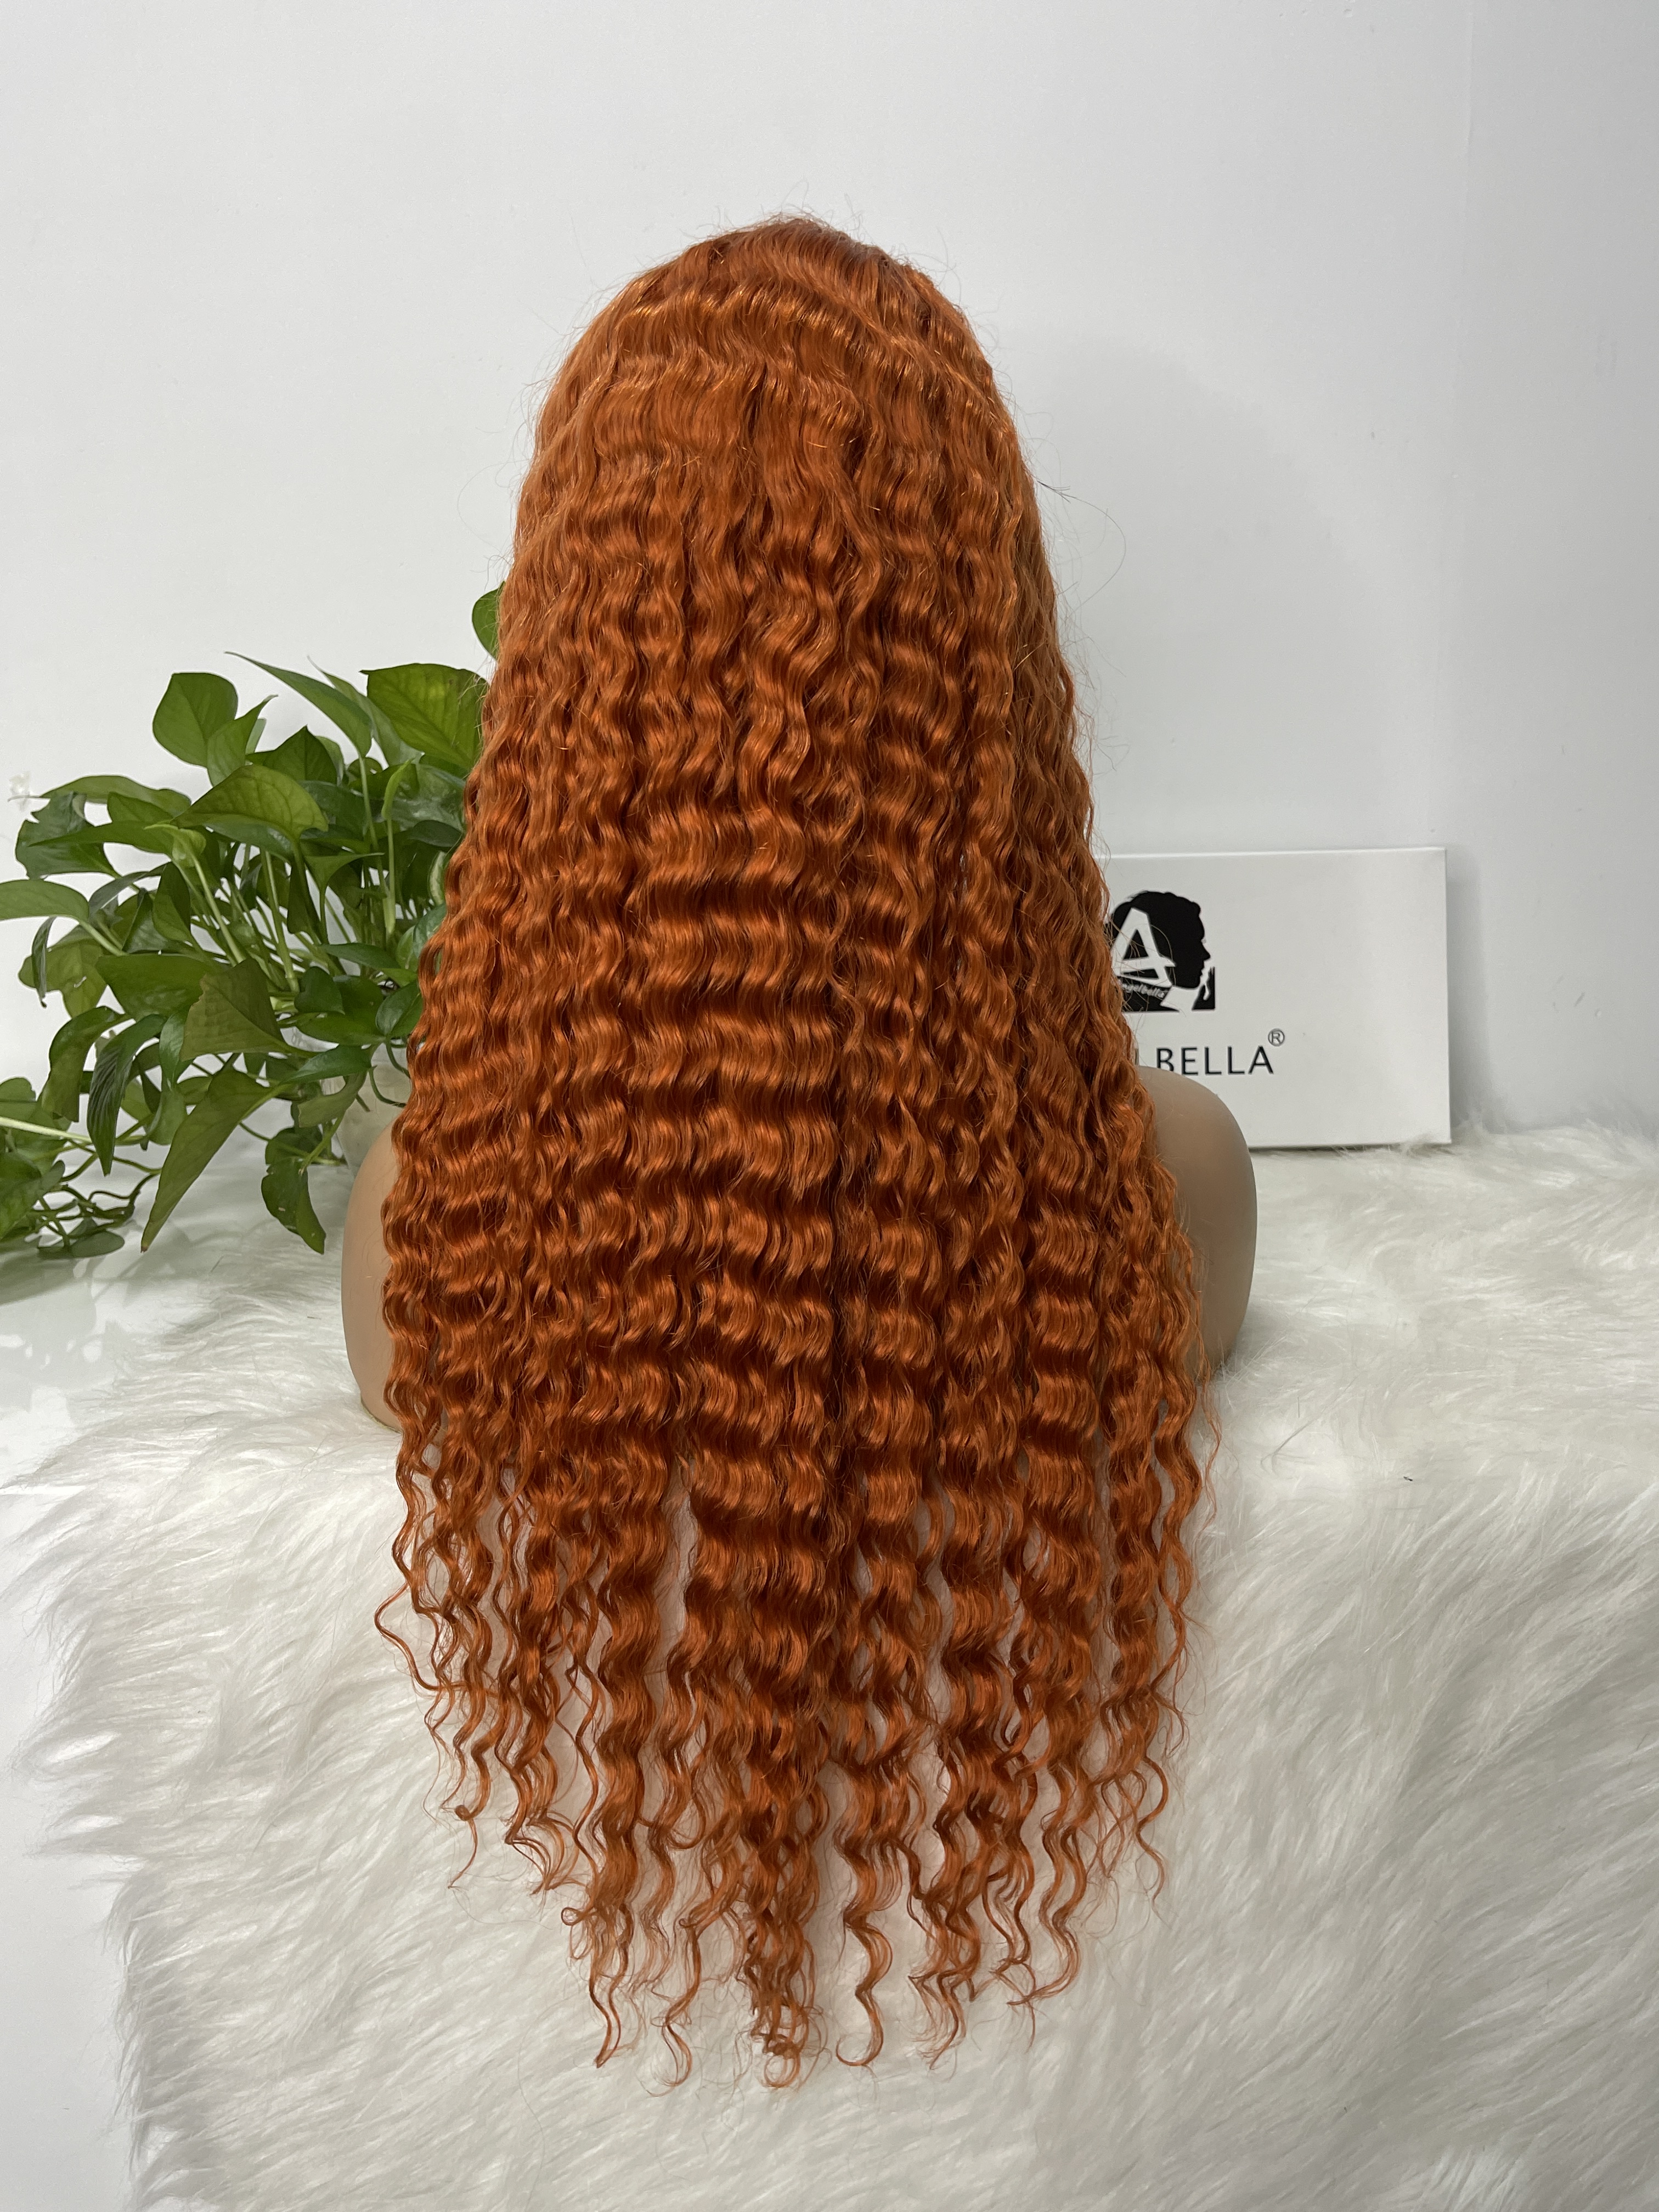 Angelbella 2022 NUEVO estilo Color de jengibre naranja 13x1x4 T Part Wig Human Hair 